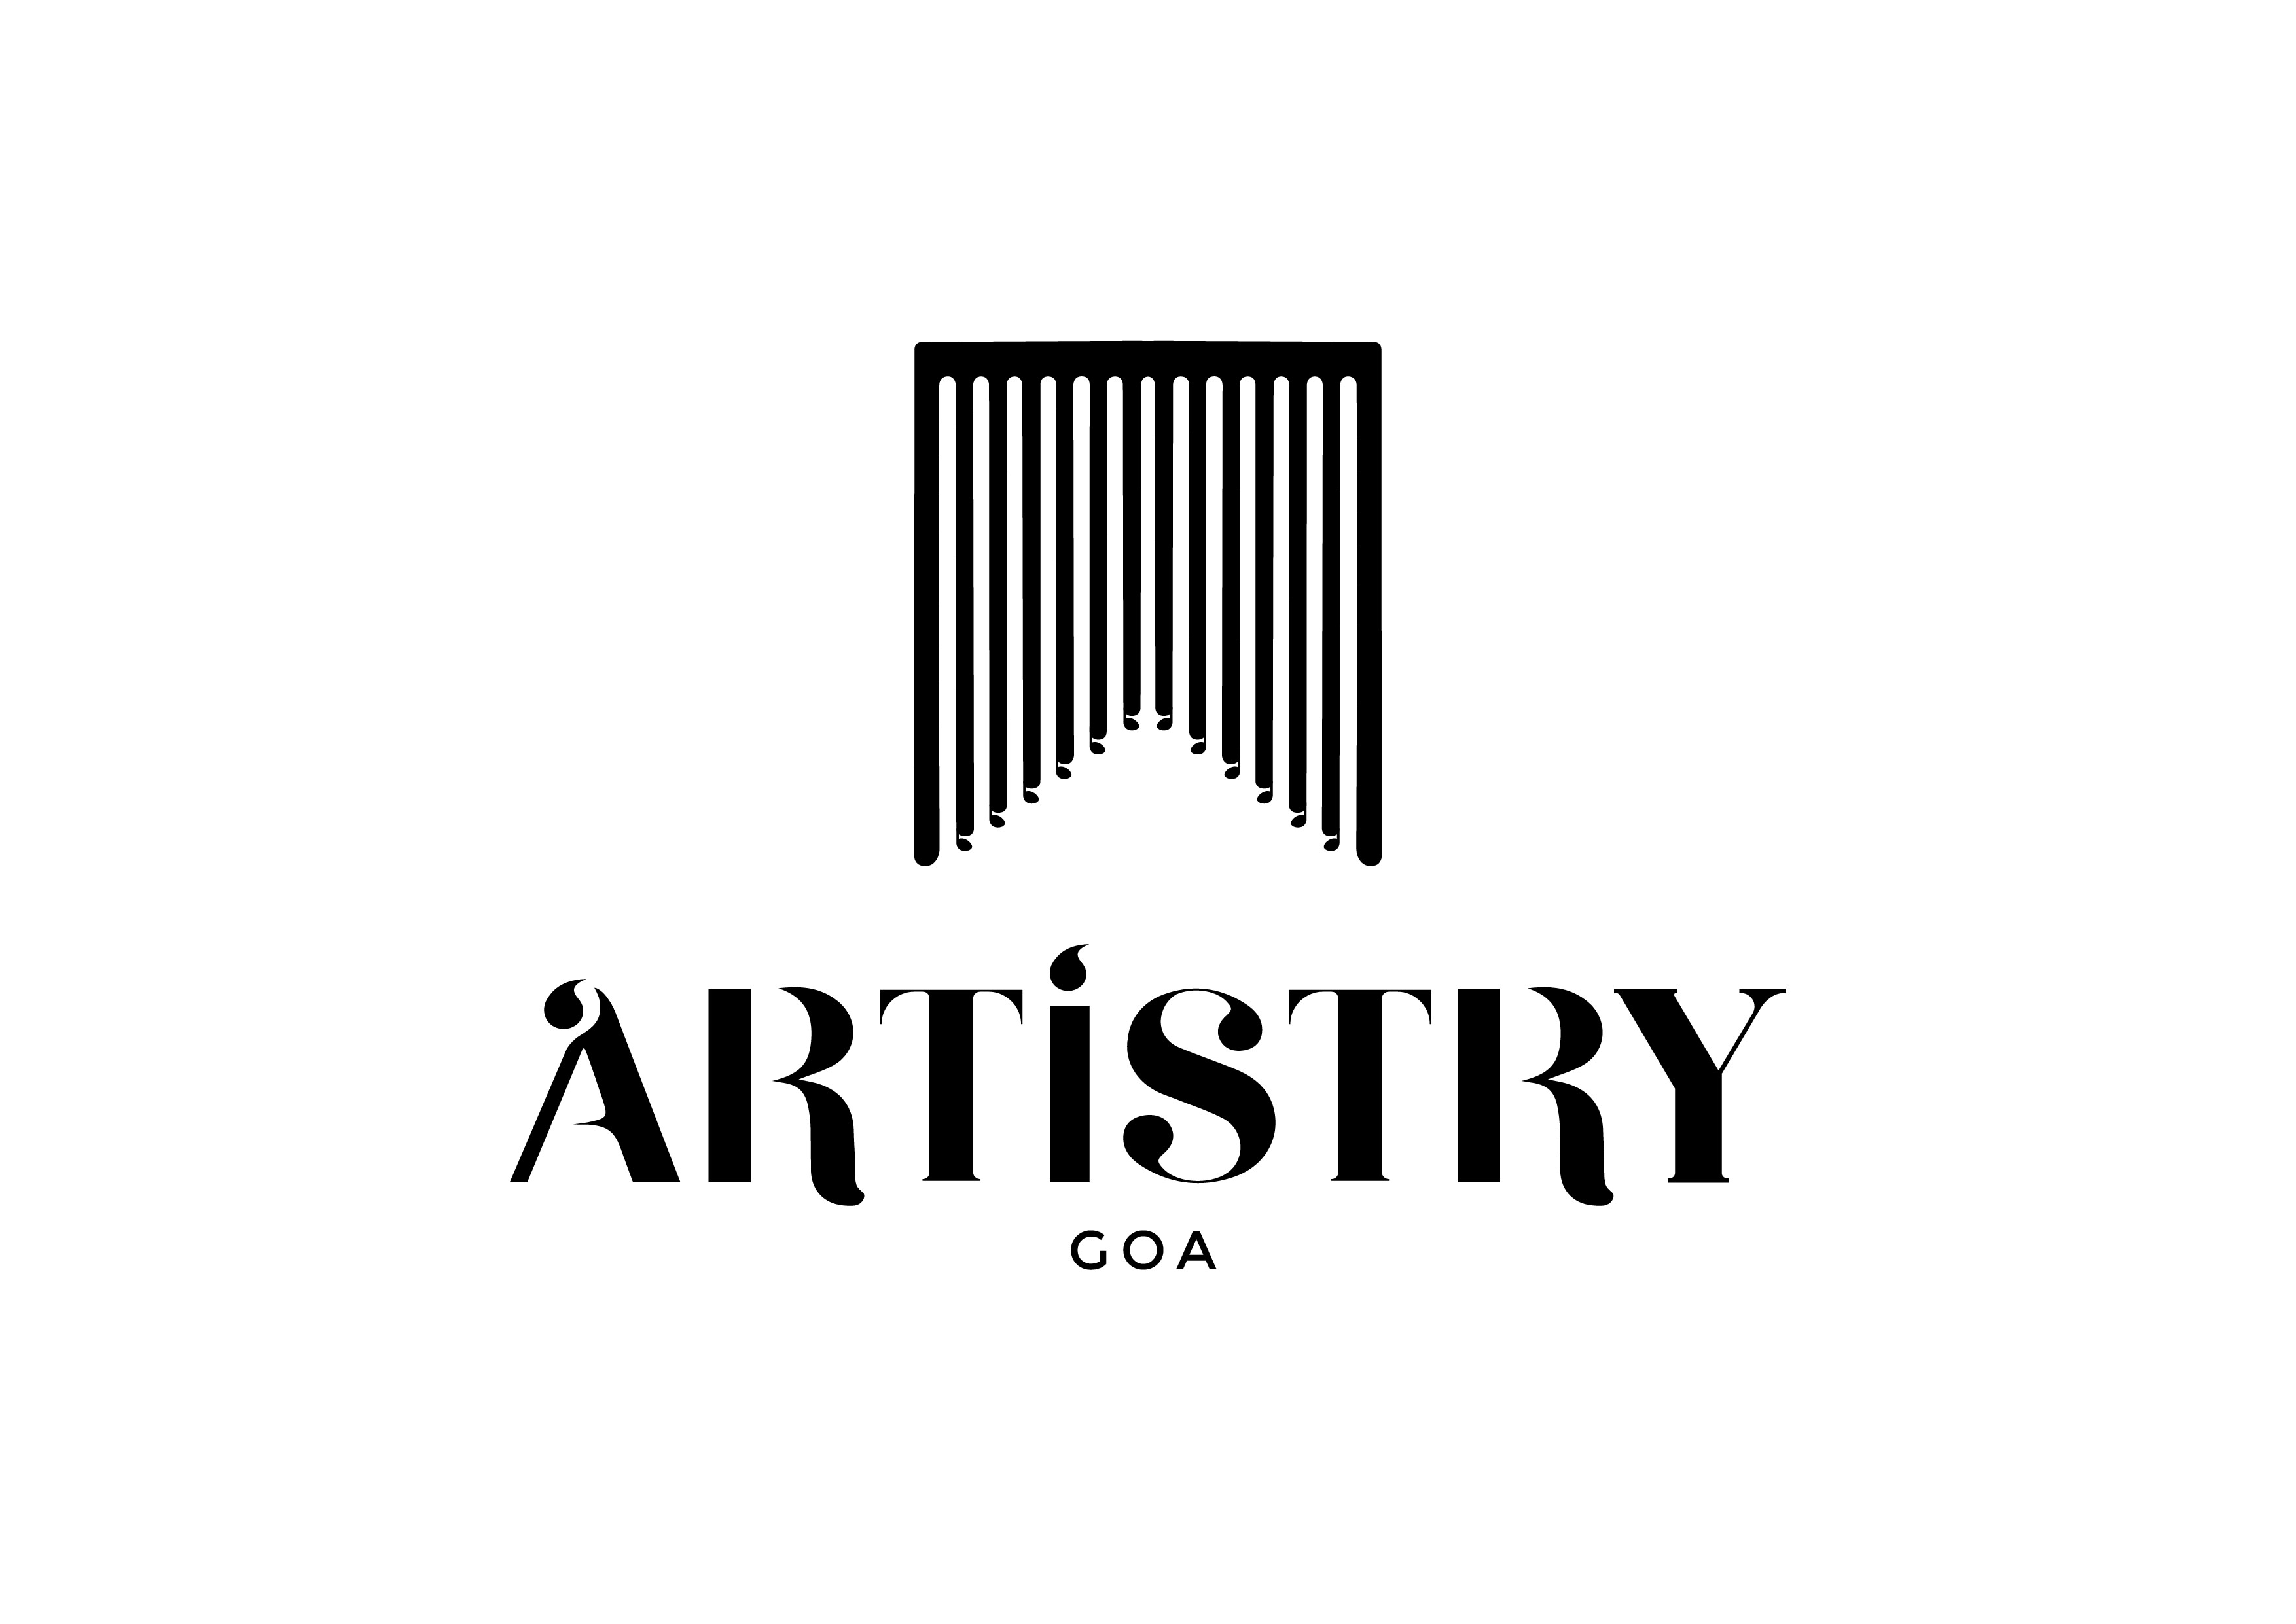 Artistry Goa